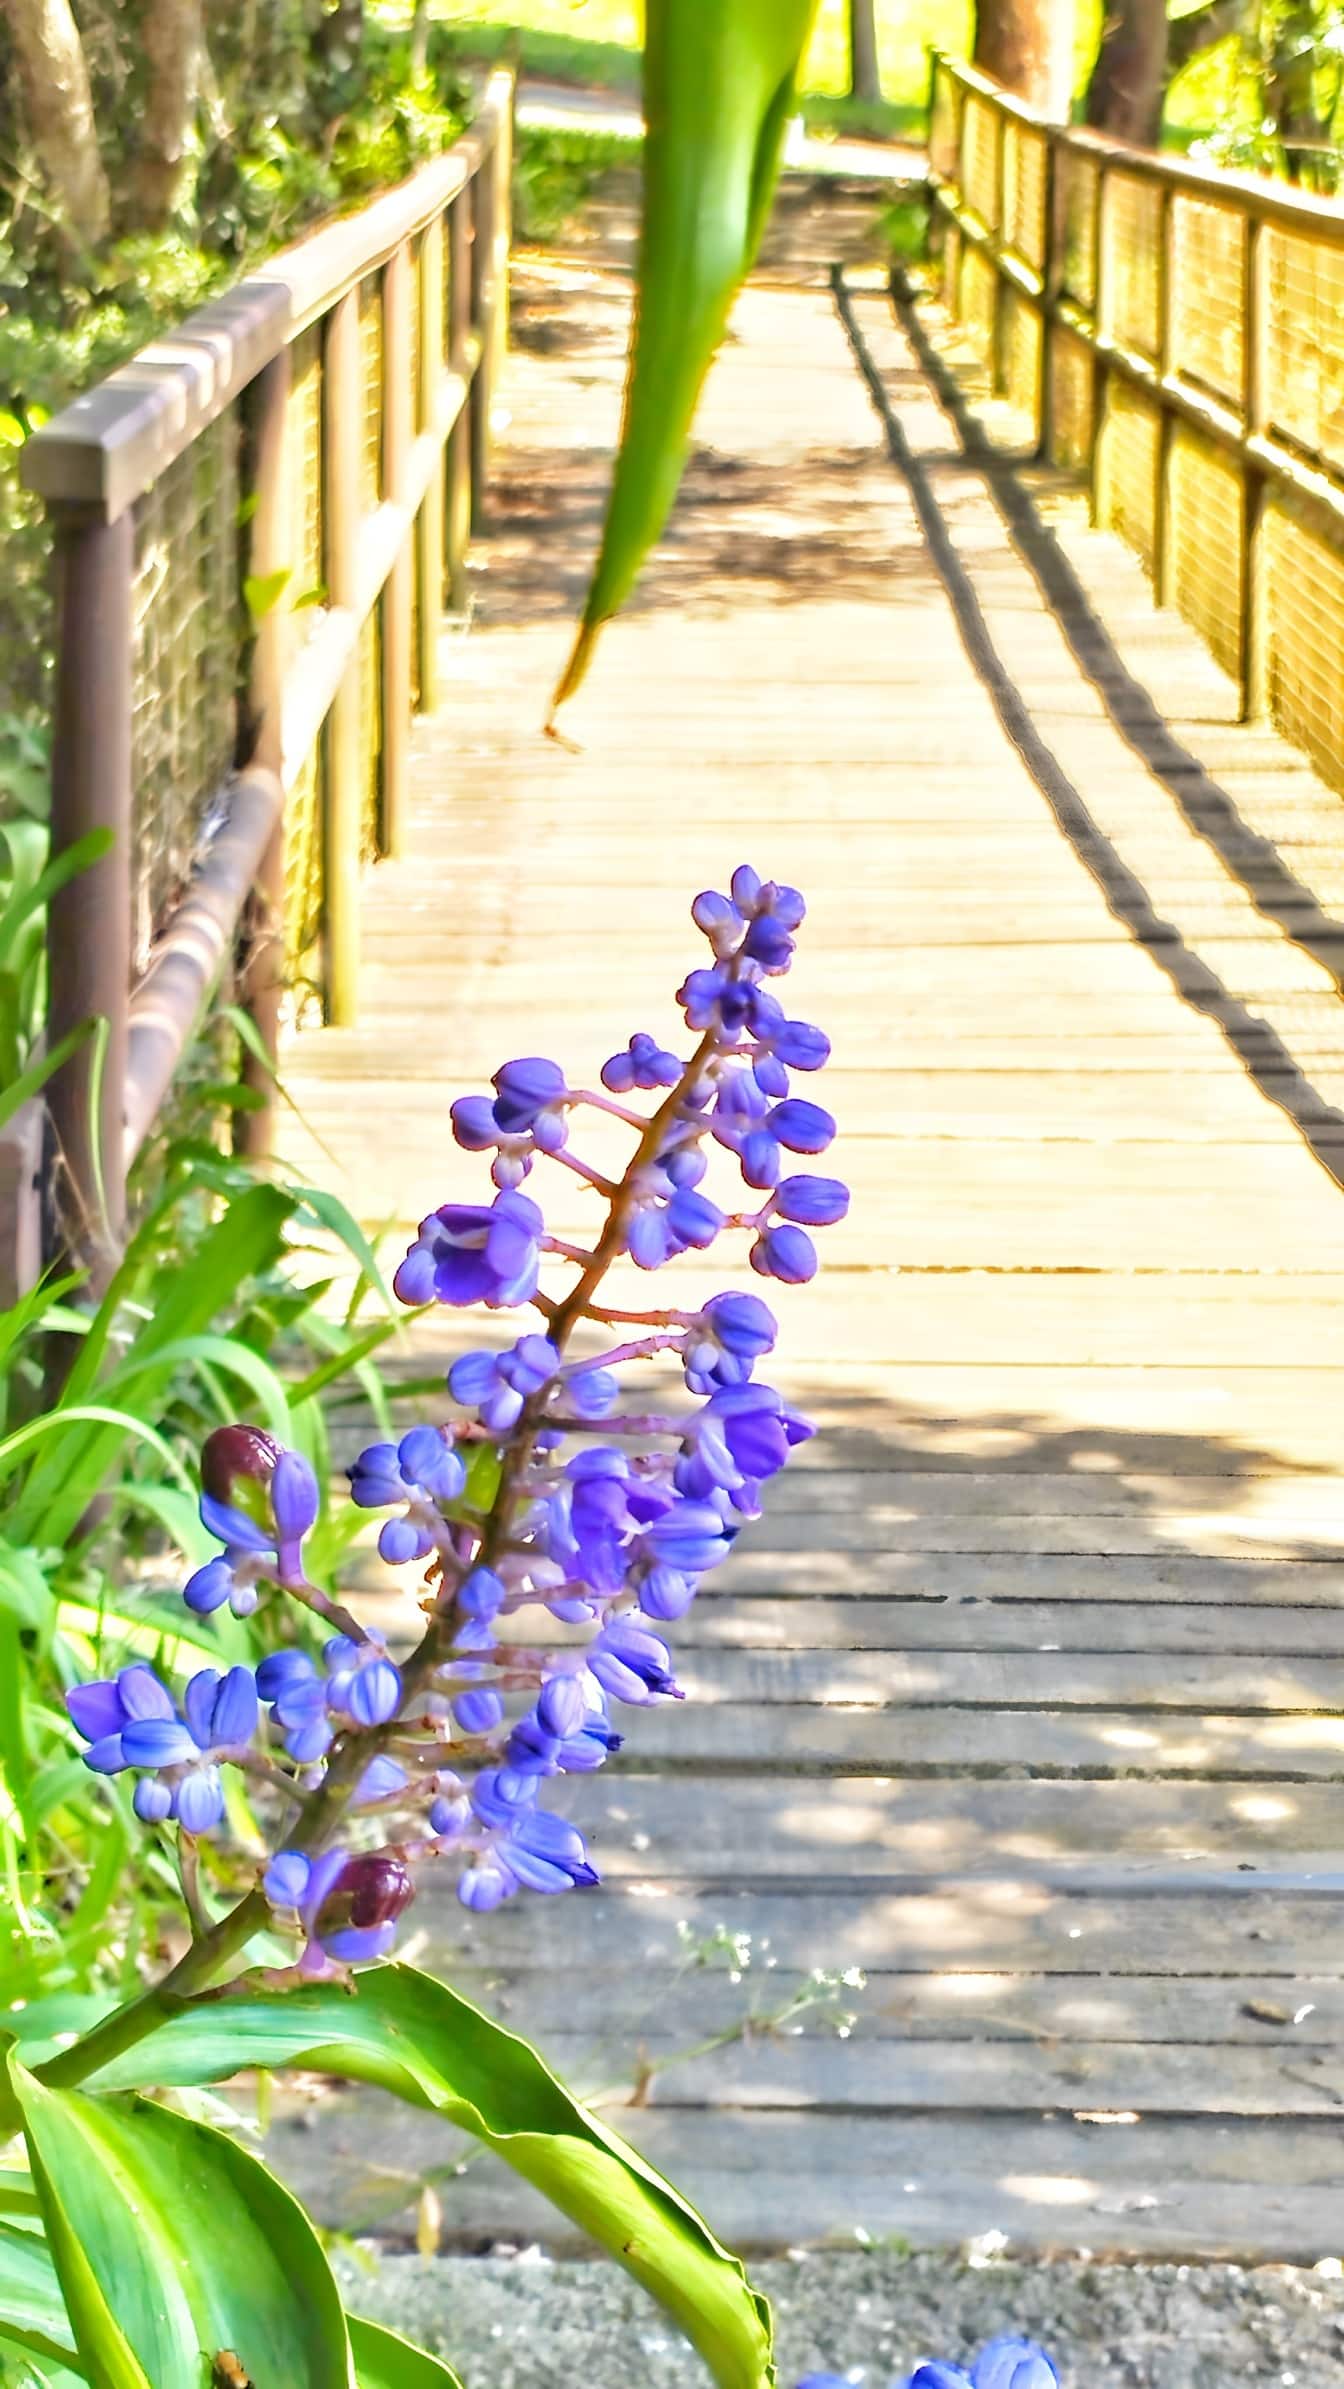 Modrý zázvorový květ (Dichorisandra thyrsiflora) na chodníku přes dřevěný most v botanické zahradě